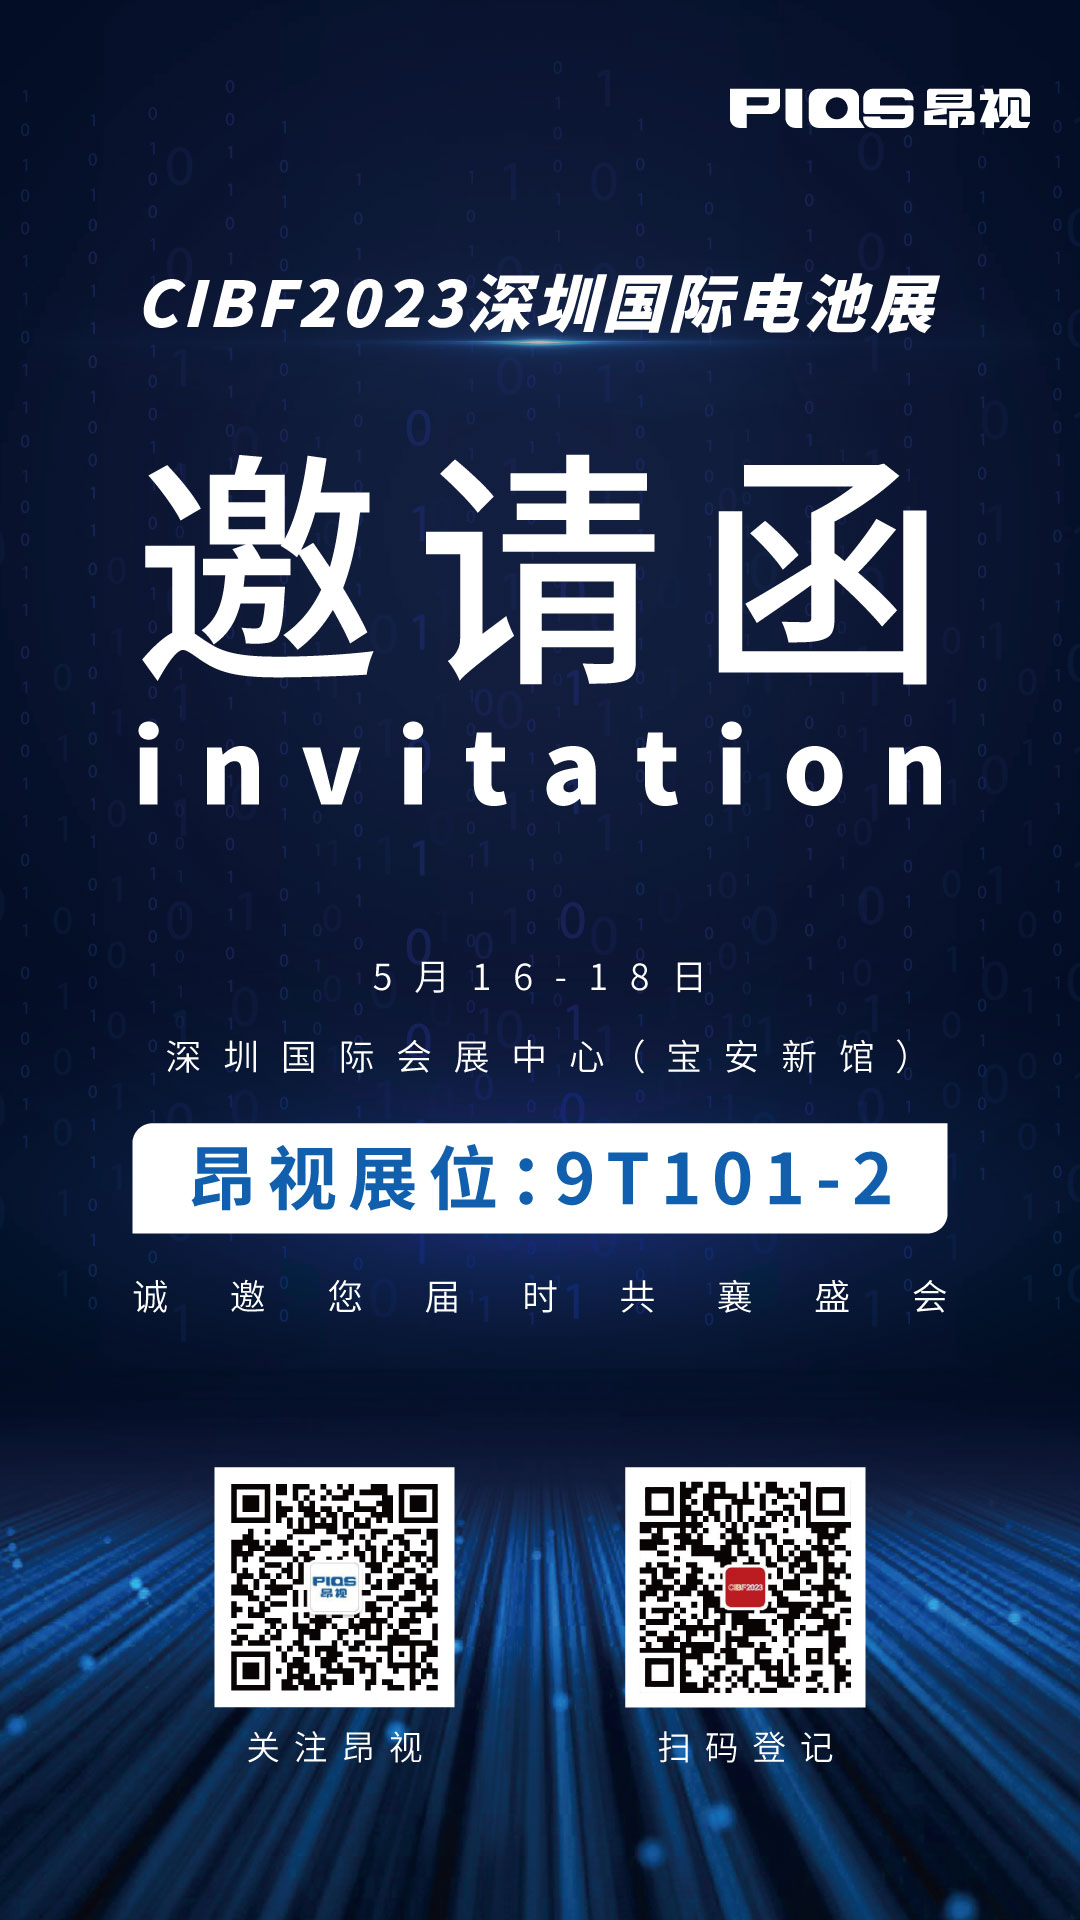 展会预告 | 昂视诚邀您届时莅临CIBF2023深圳国际电池展